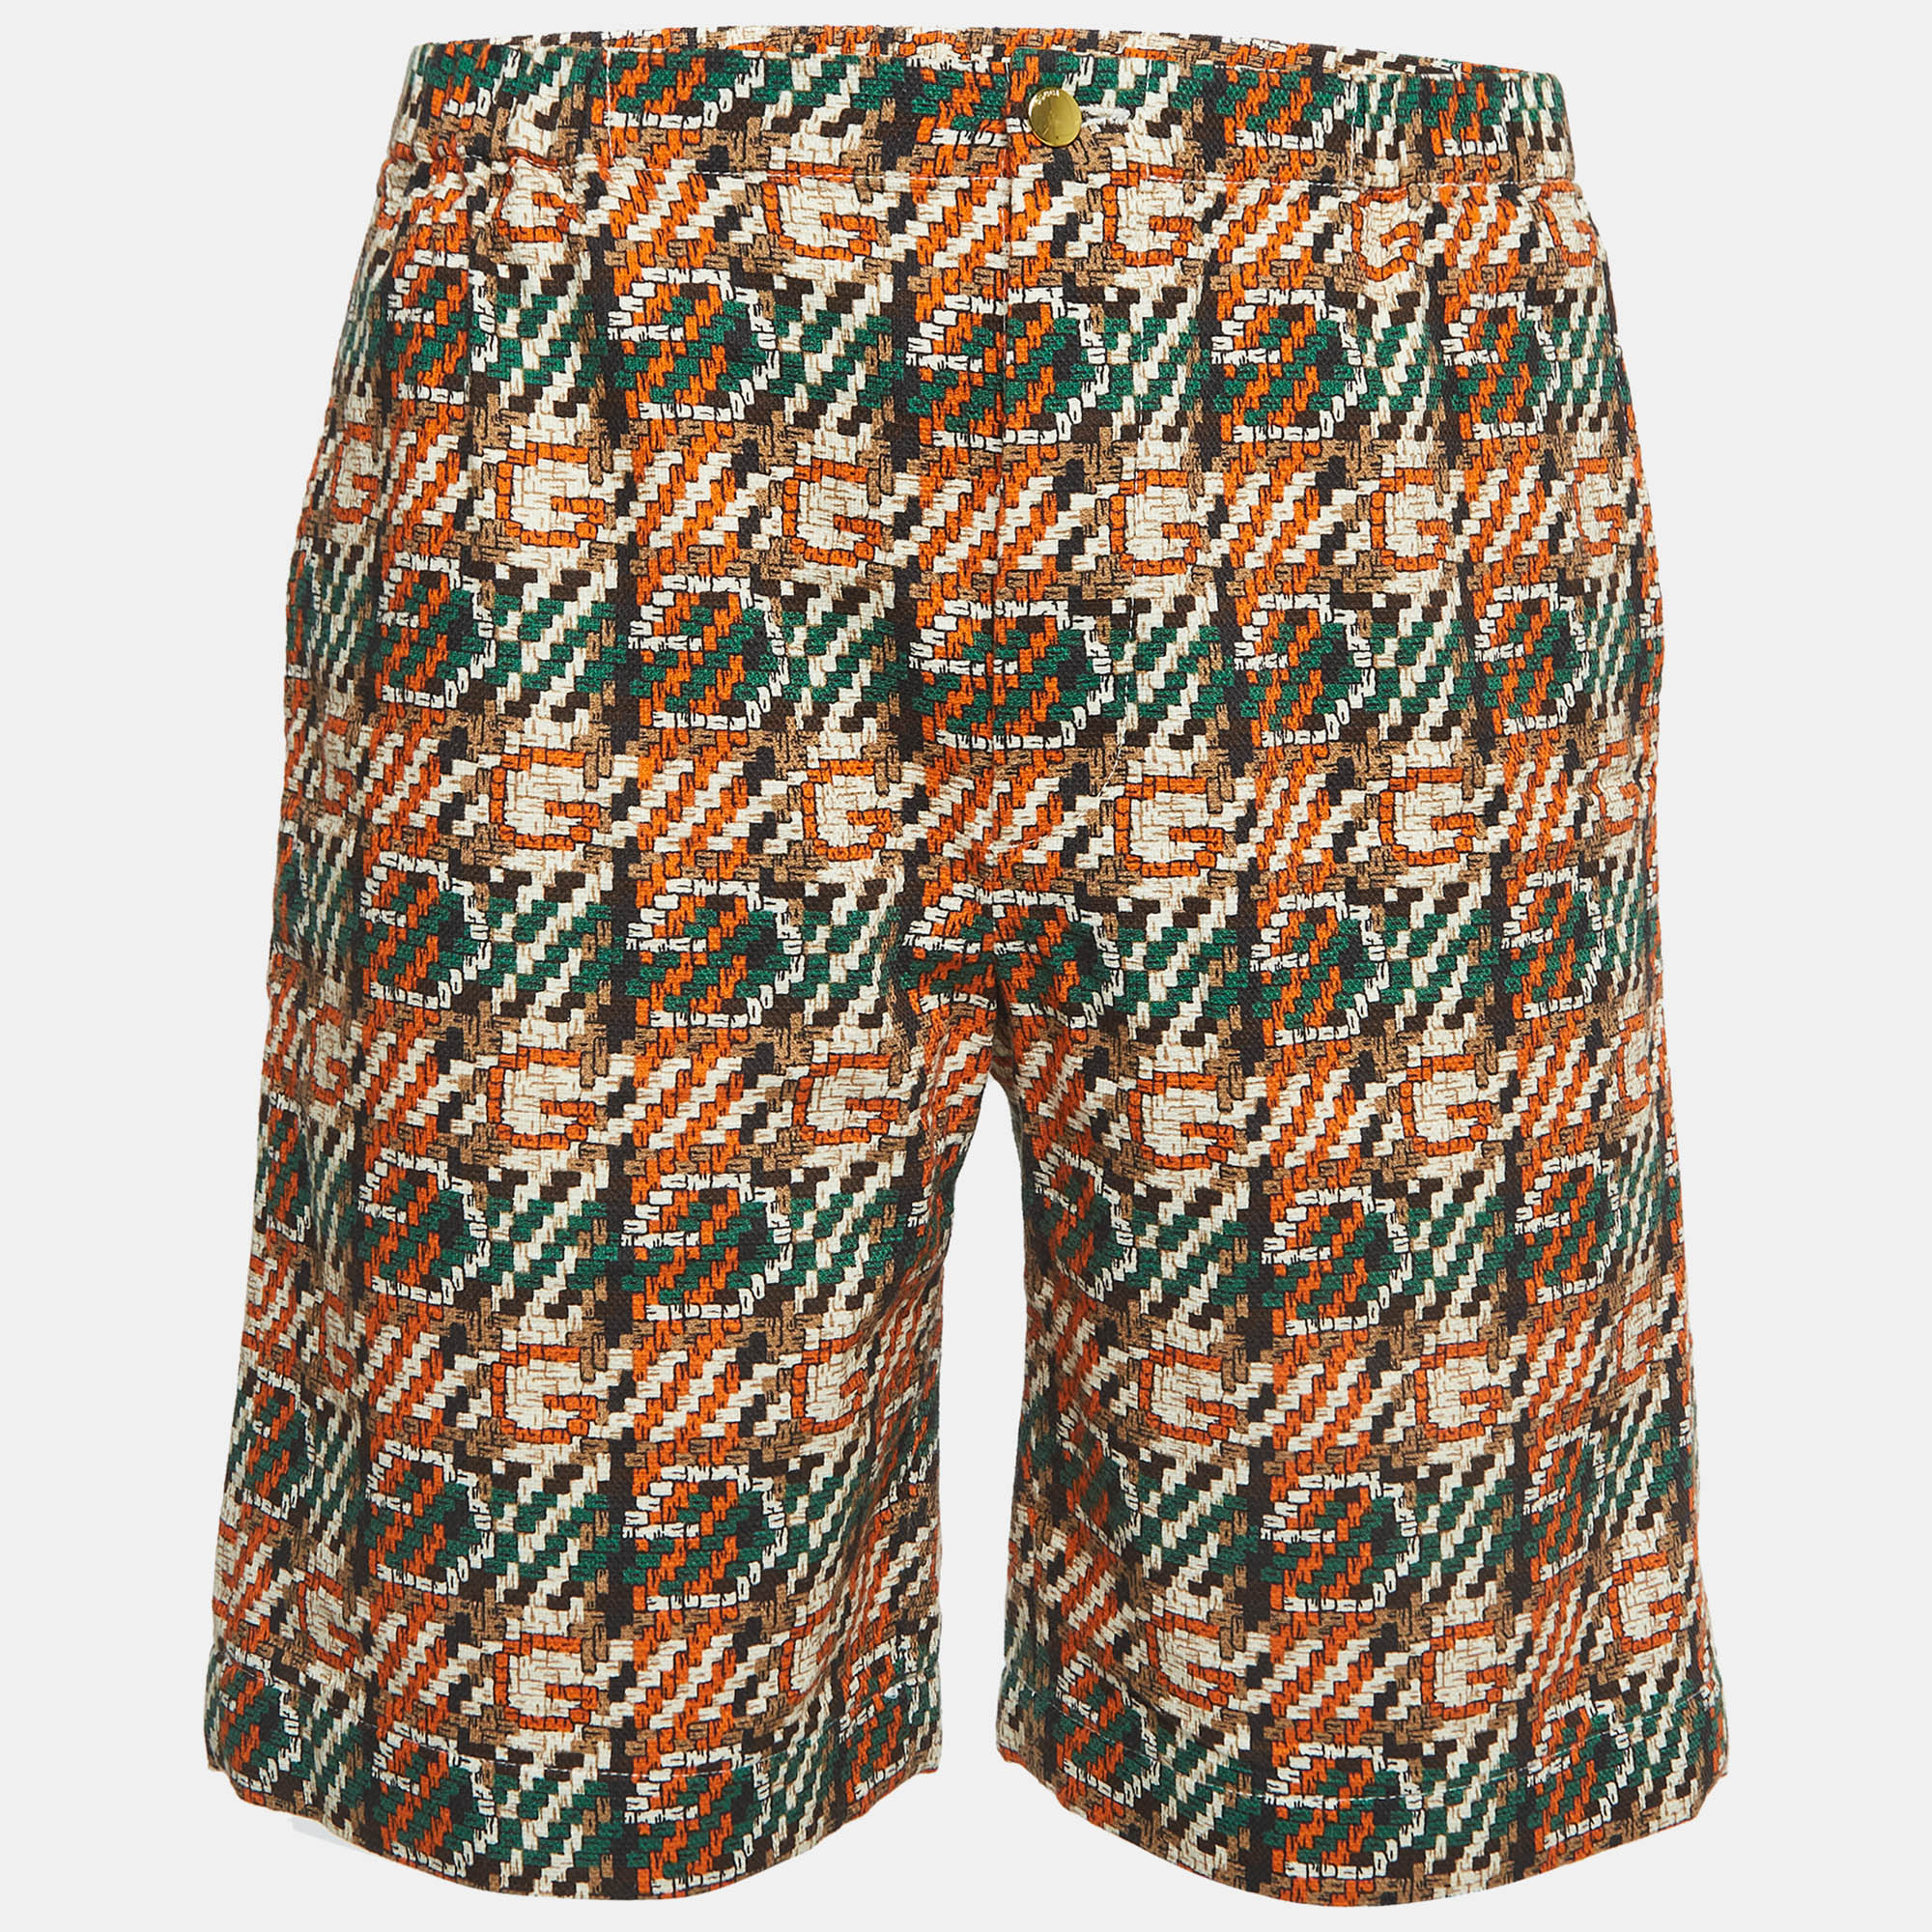 Gucci multicolor printed cotton shorts s